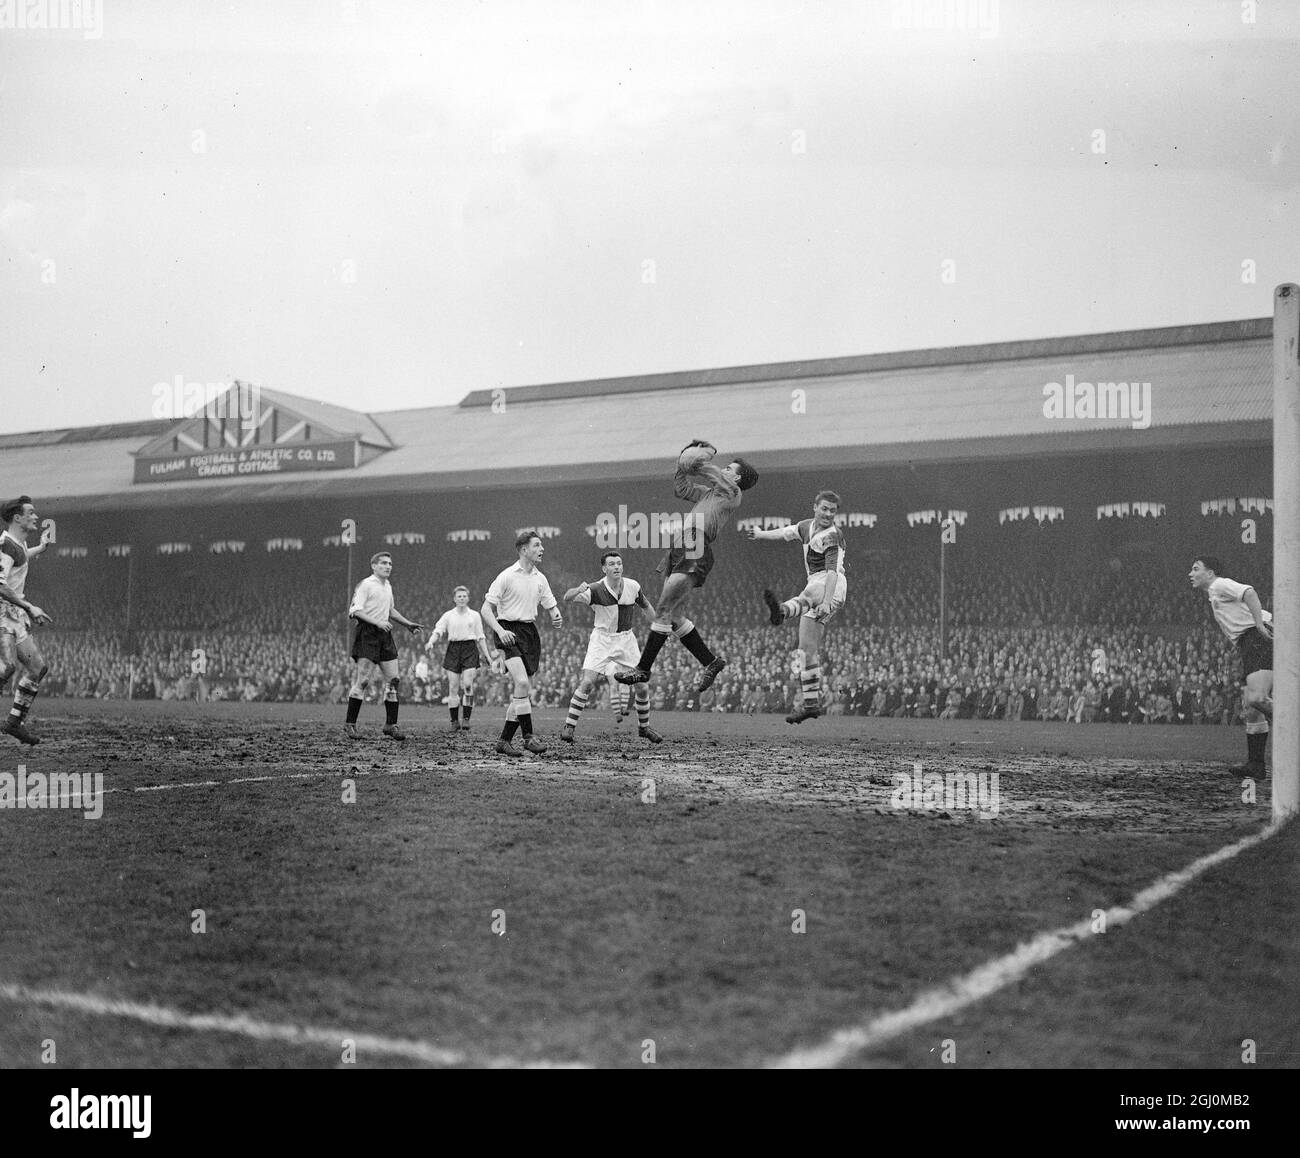 London England Football Team Fulham das einzige Team, das noch im FA Cup-Abschluss war, traf die Gewinner von Bristol Rovers Fulham mit drei Toren auf einen Torhüter von Bristol Rovers Nicholls, der den Ball beim Fulham-Angriff am 1. März 1958 einsammelte. Stockfoto